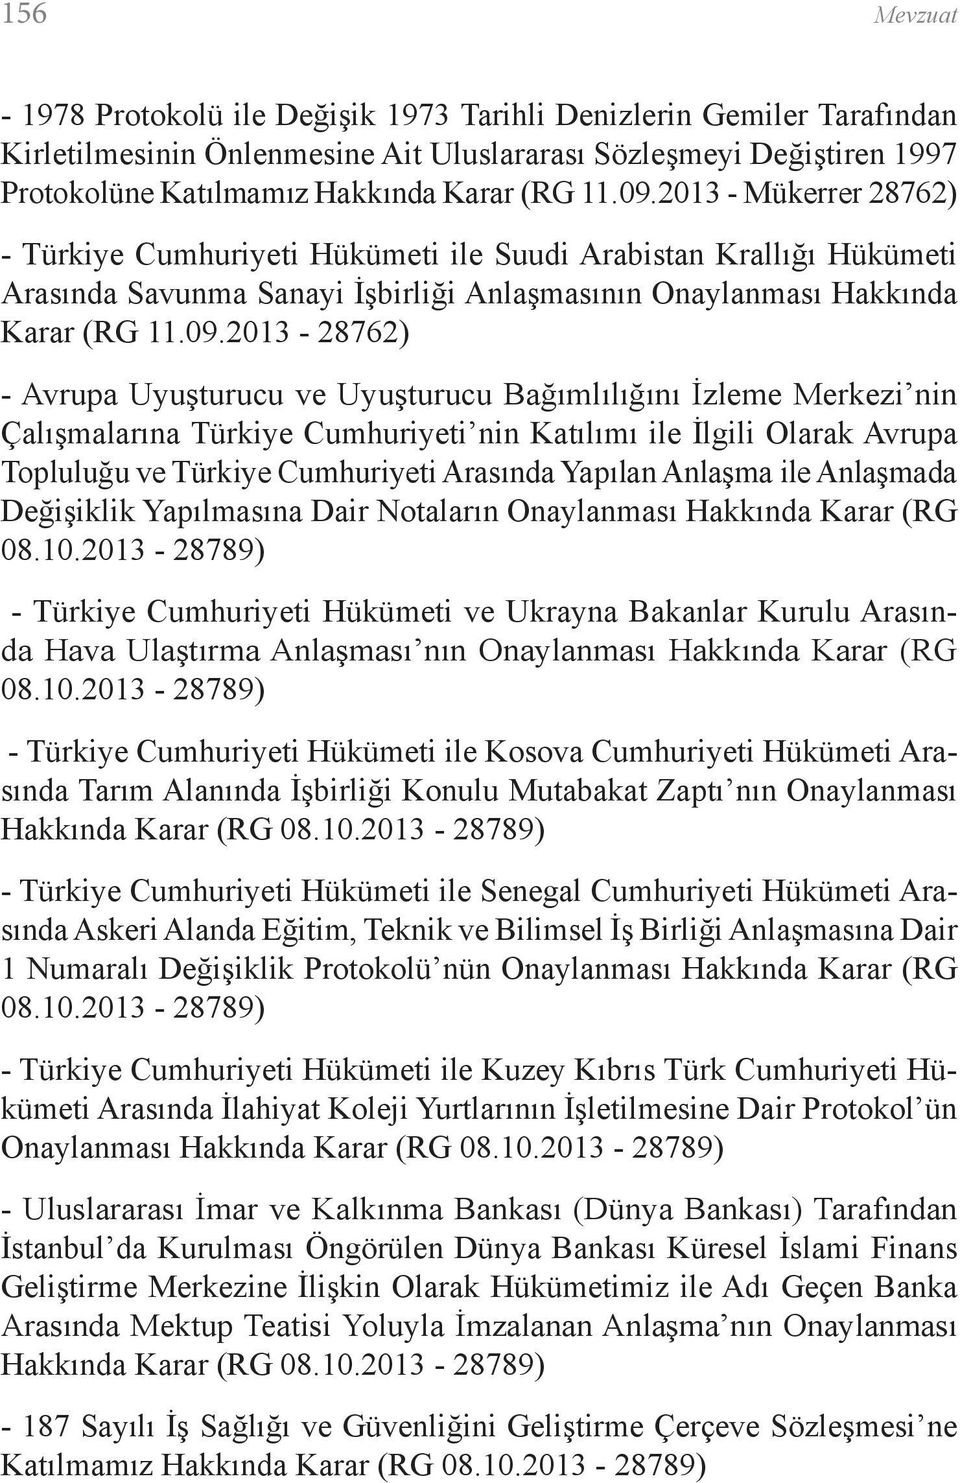 2013 - Mükerrer 28762) - Türkiye Cumhuriyeti Hükümeti ile Suudi Arabistan Krallığı Hükümeti Arasında Savunma Sanayi İşbirliği Anlaşmasının Onaylanması Hakkında Karar (RG 2013-28762) - Avrupa